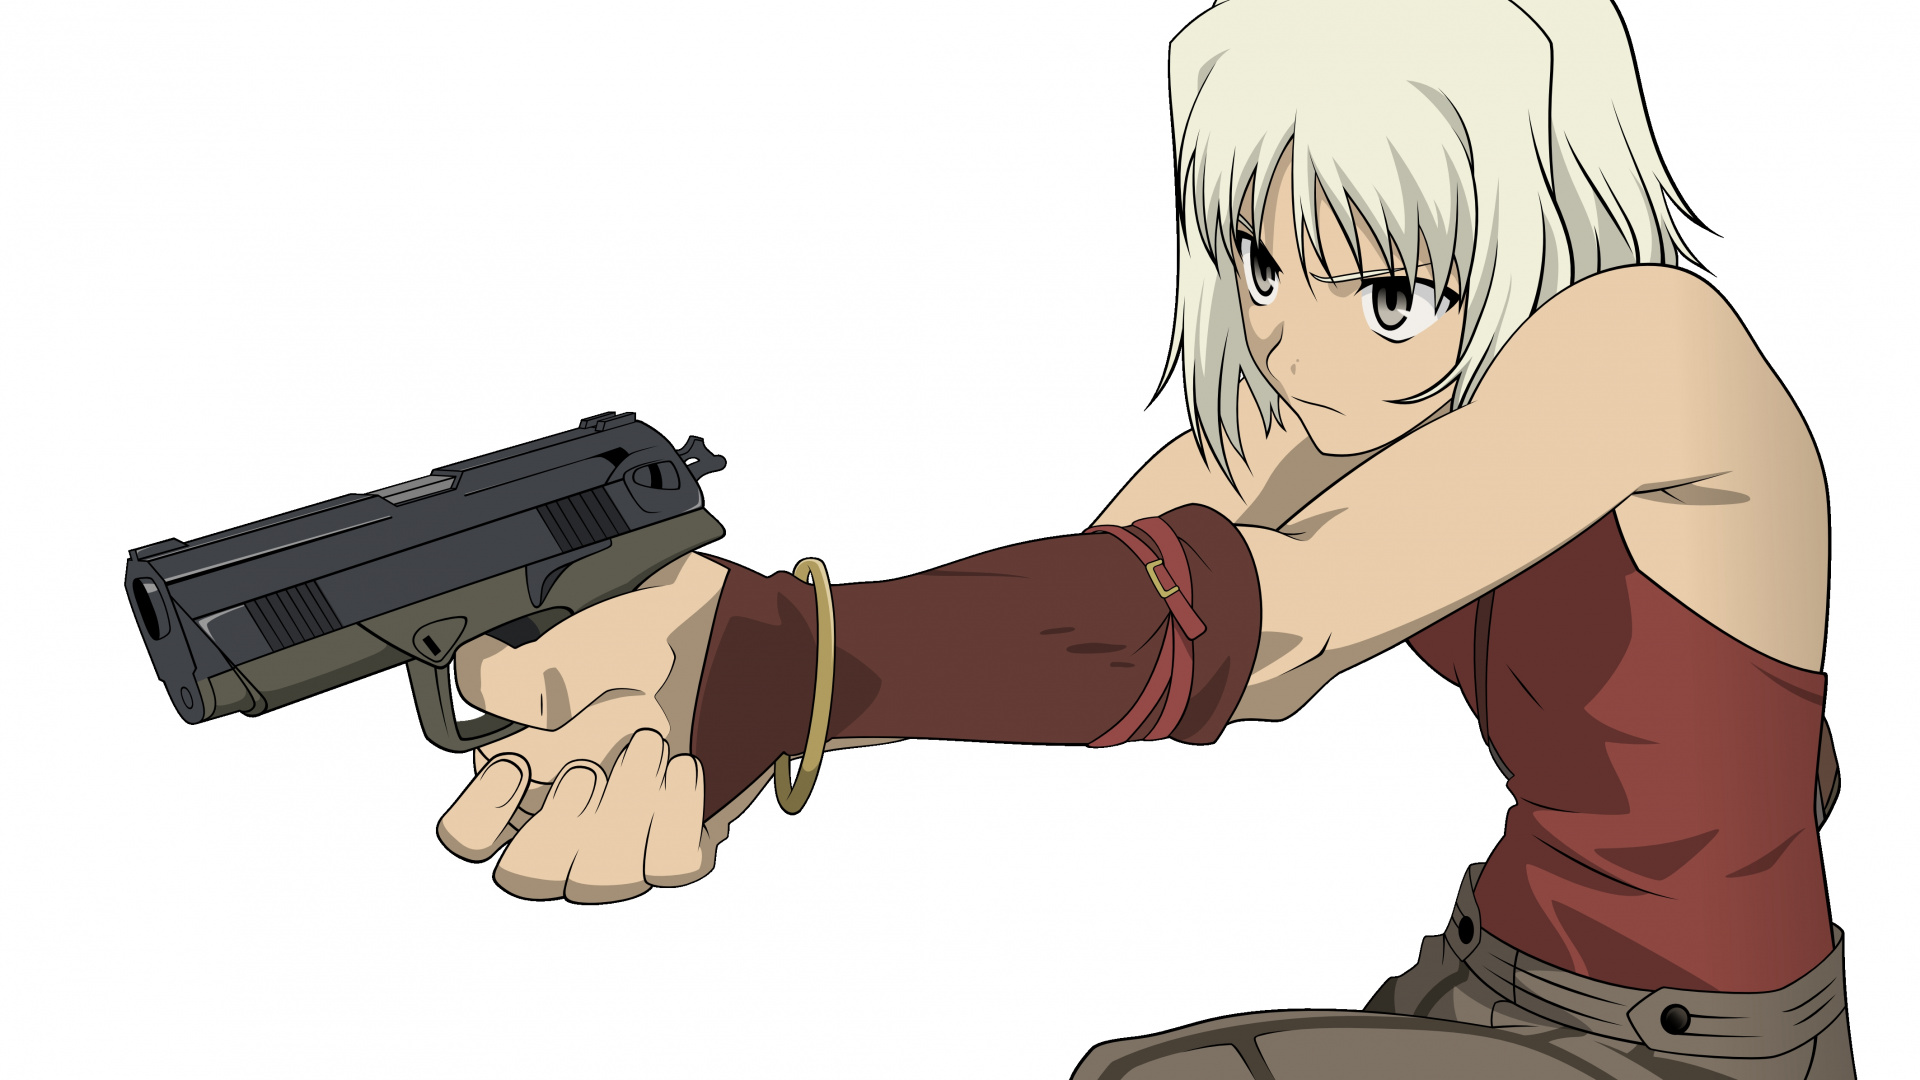 Personnage D'anime Masculin Aux Cheveux Blonds Tenant un Pistolet Semi-automatique Noir. Wallpaper in 1920x1080 Resolution